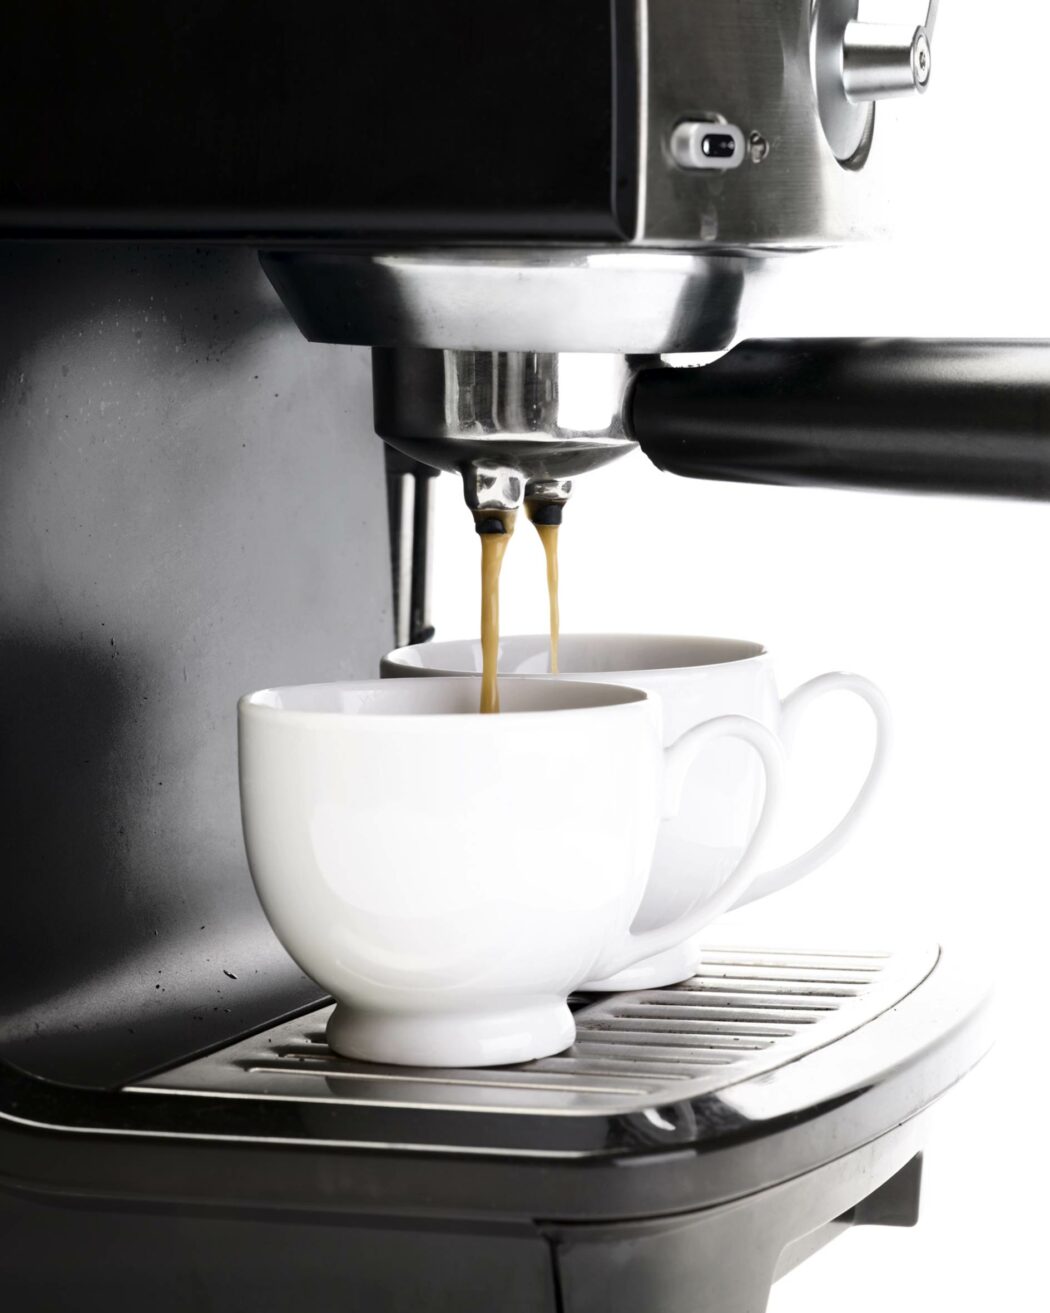 Macchine per il caffè: modelli per ristoranti e casalinghi a confronto